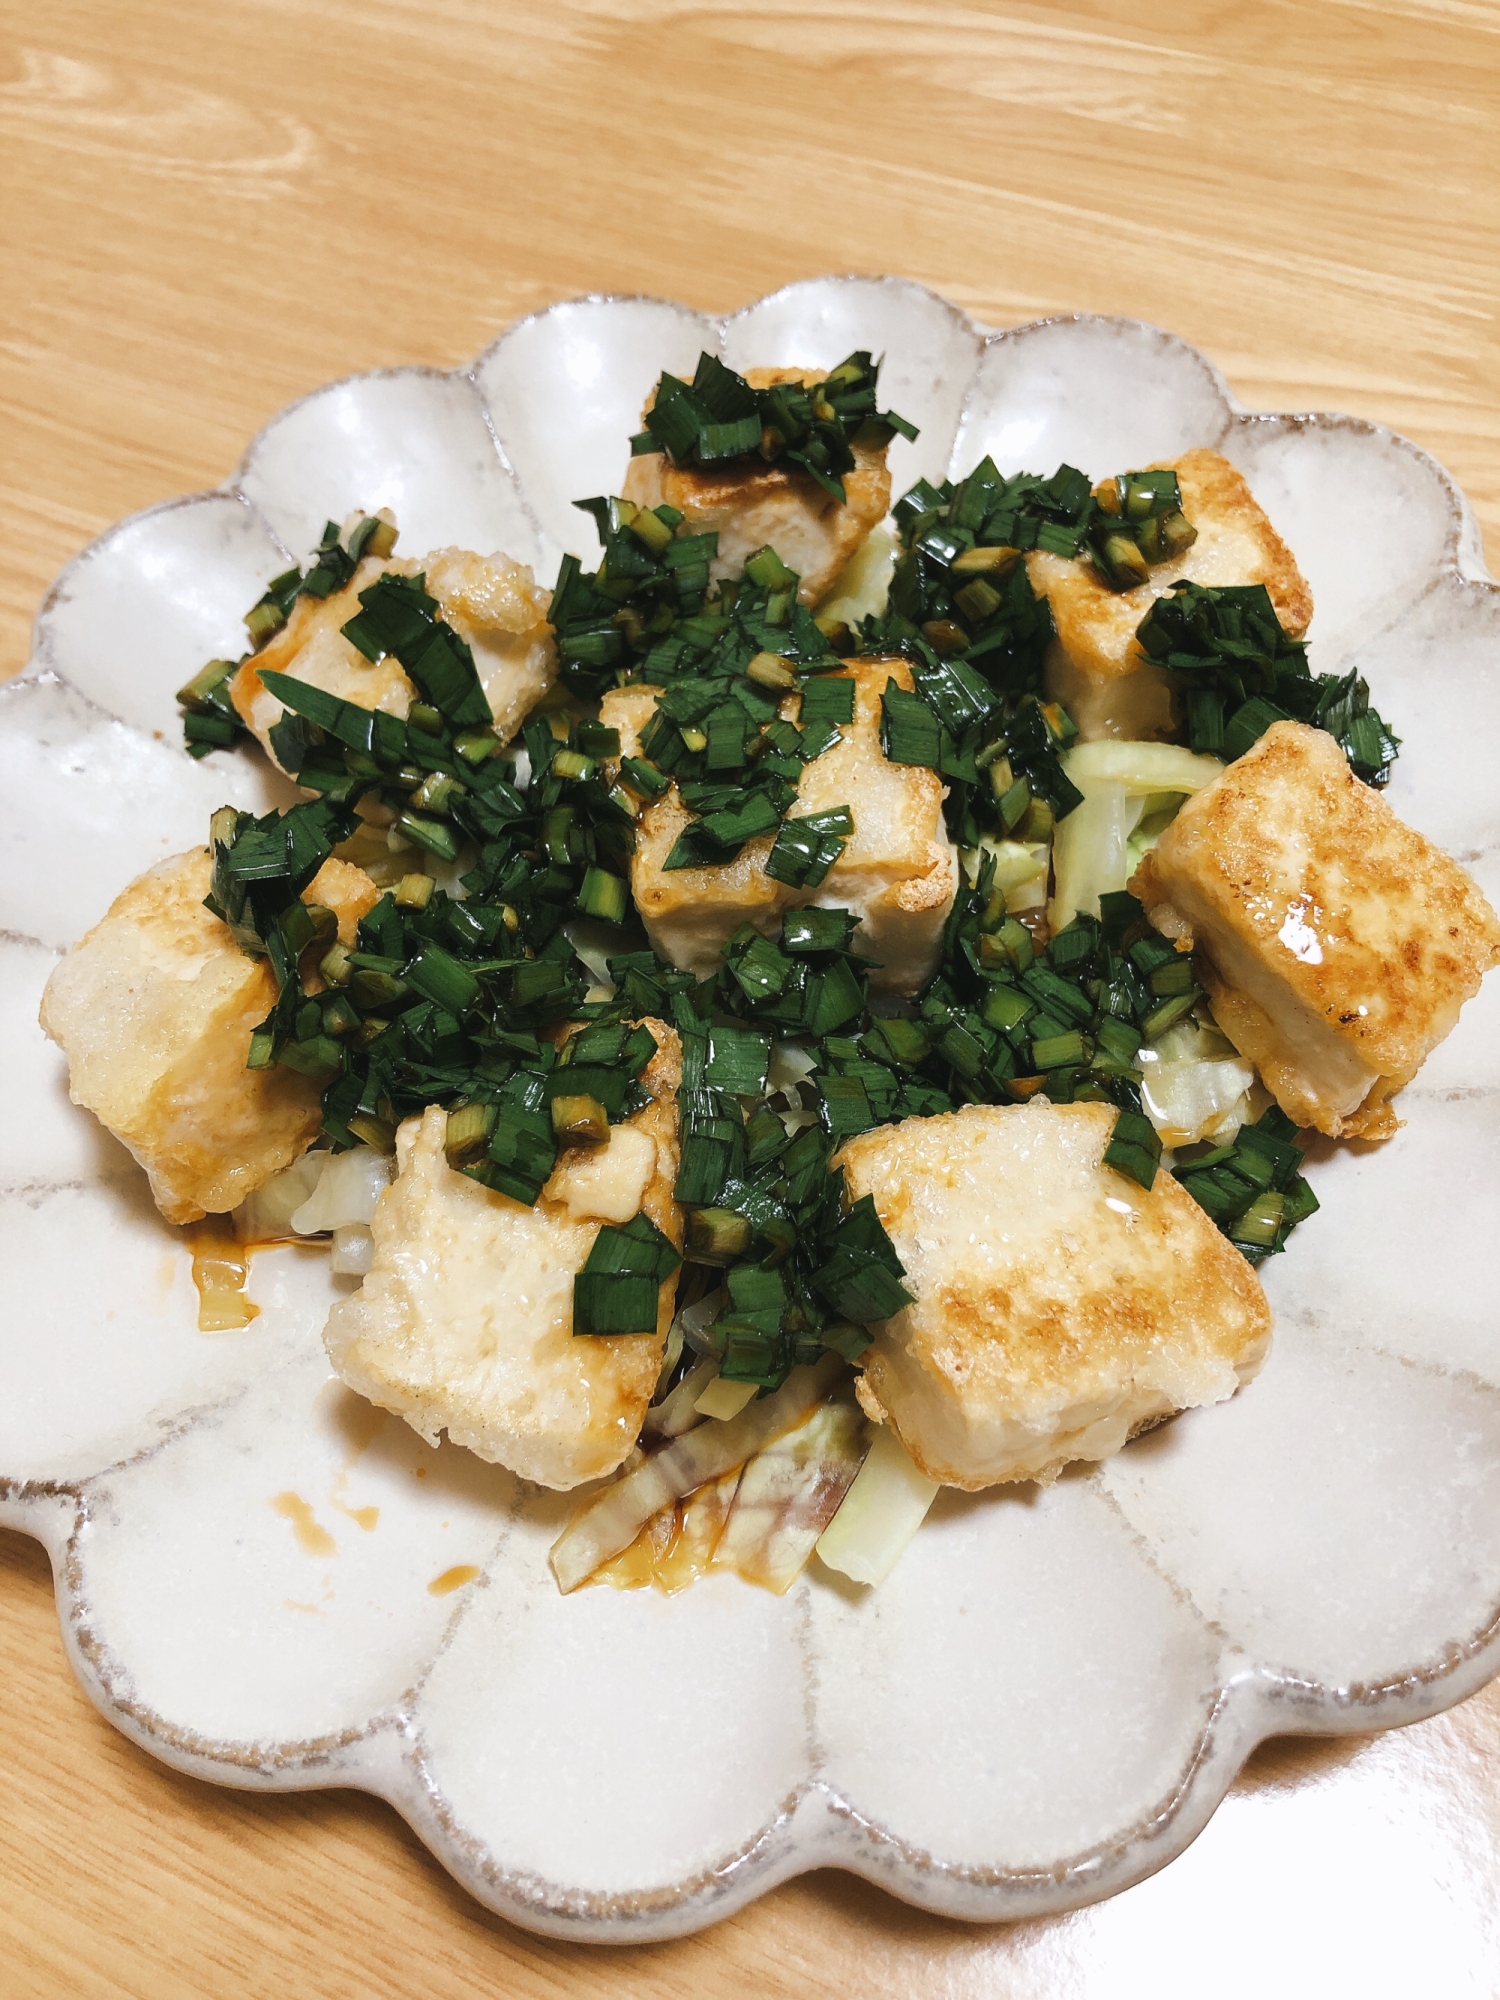 ニラダレの豆腐サラダ